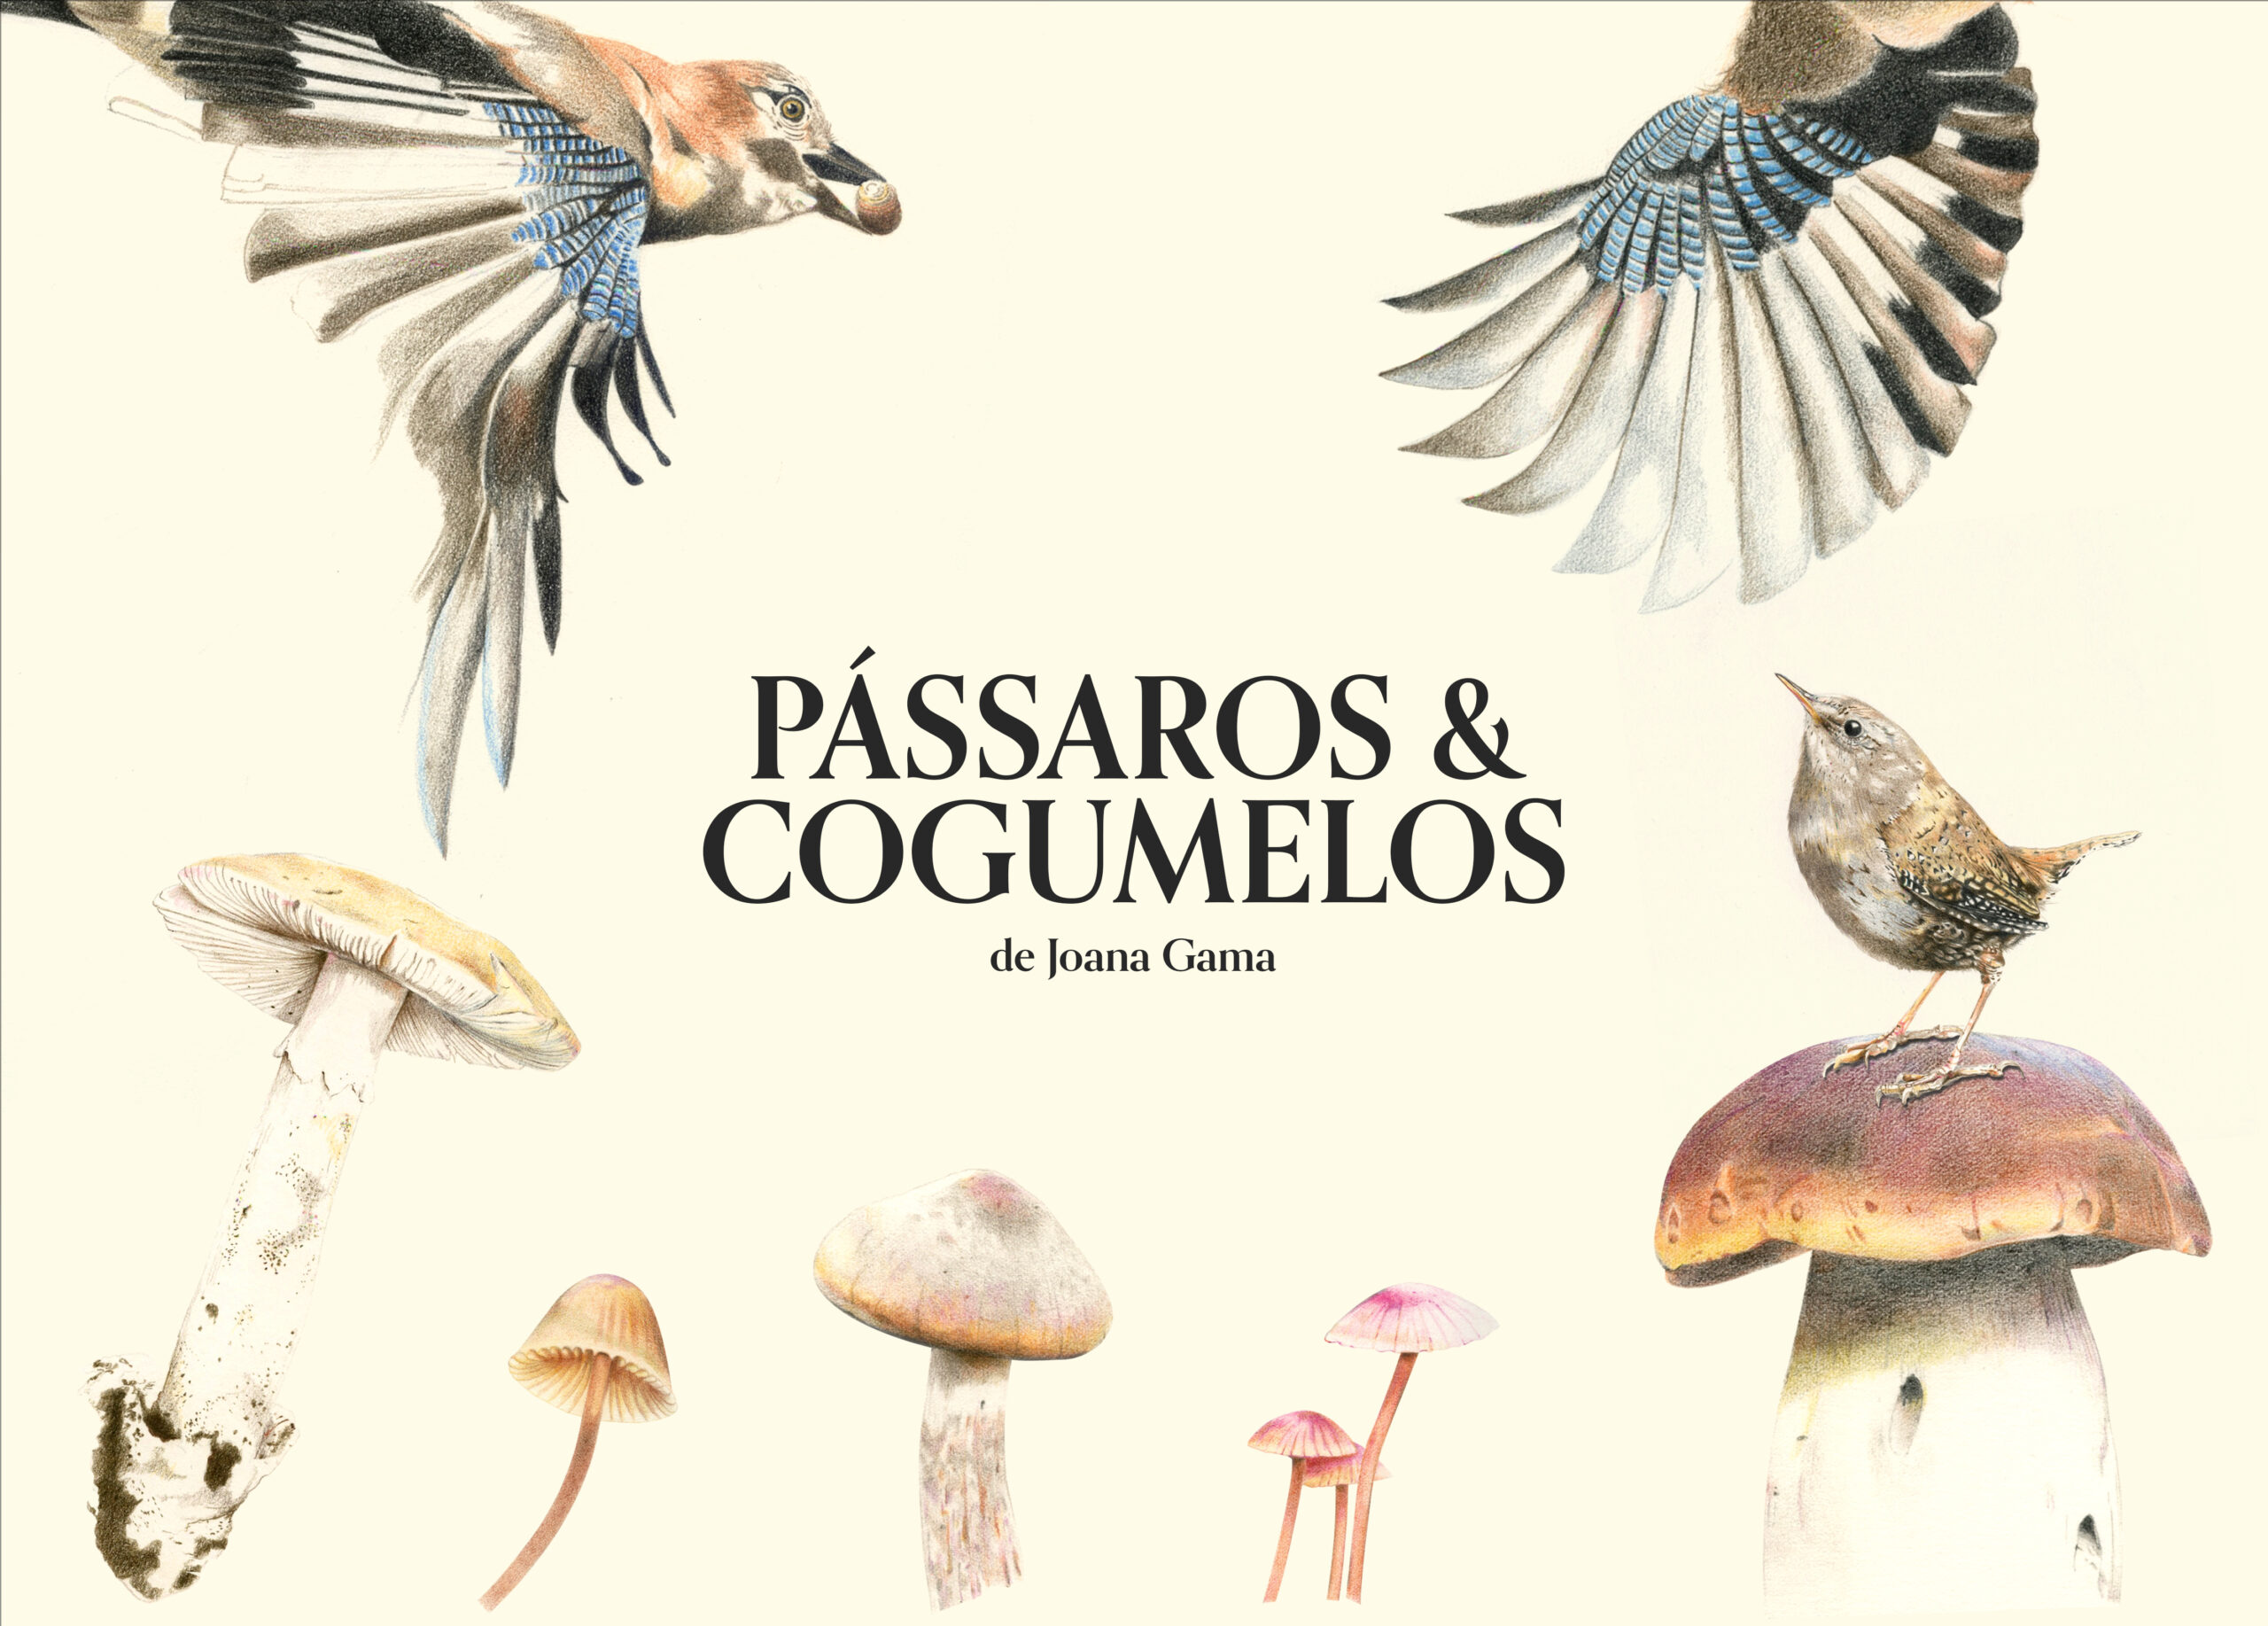 H - Imagem - Pássaros & Cogumelos